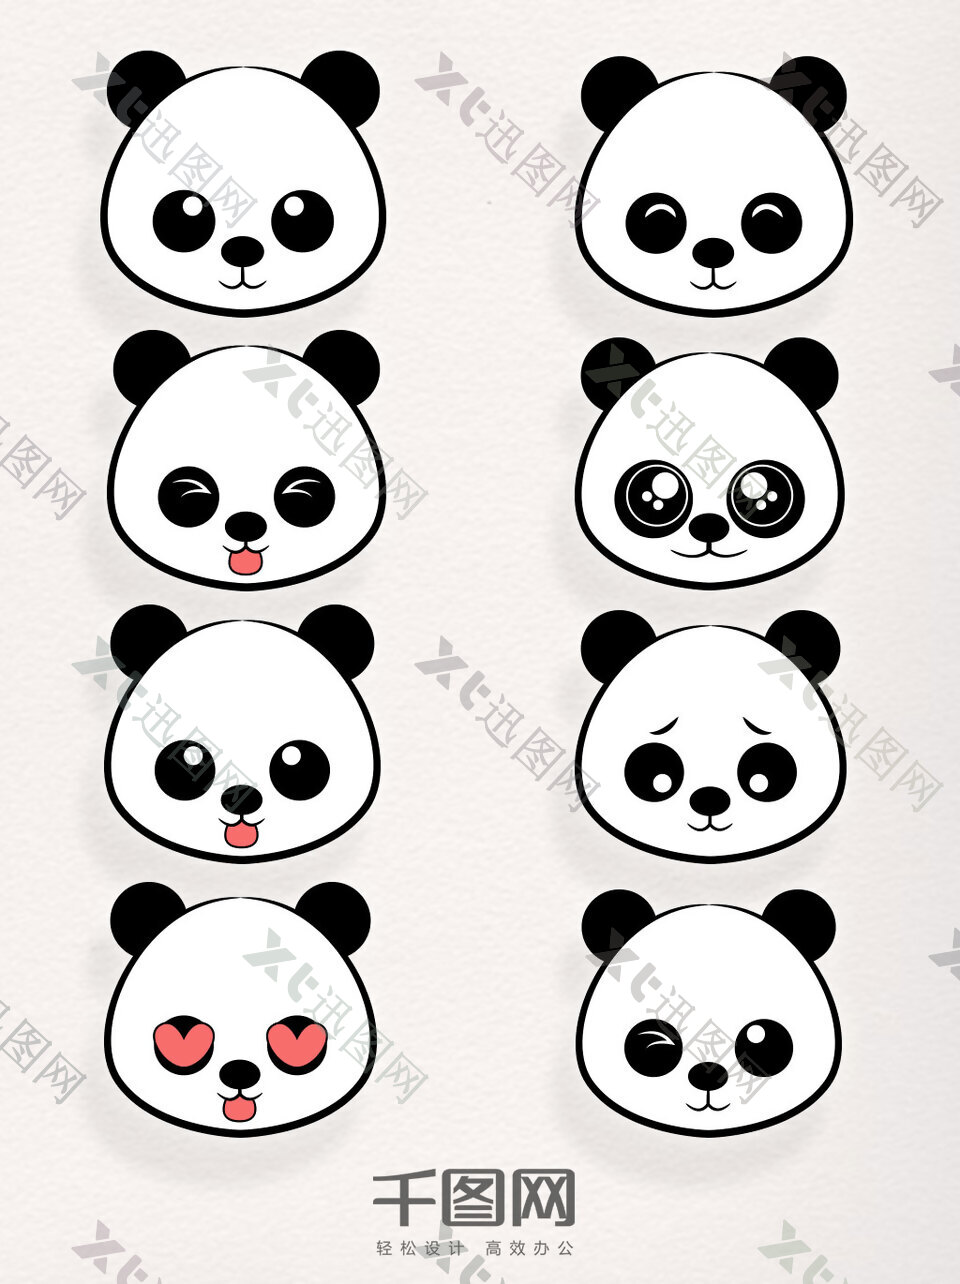 矢量素材卡通熊猫元素装饰表情包图案集合